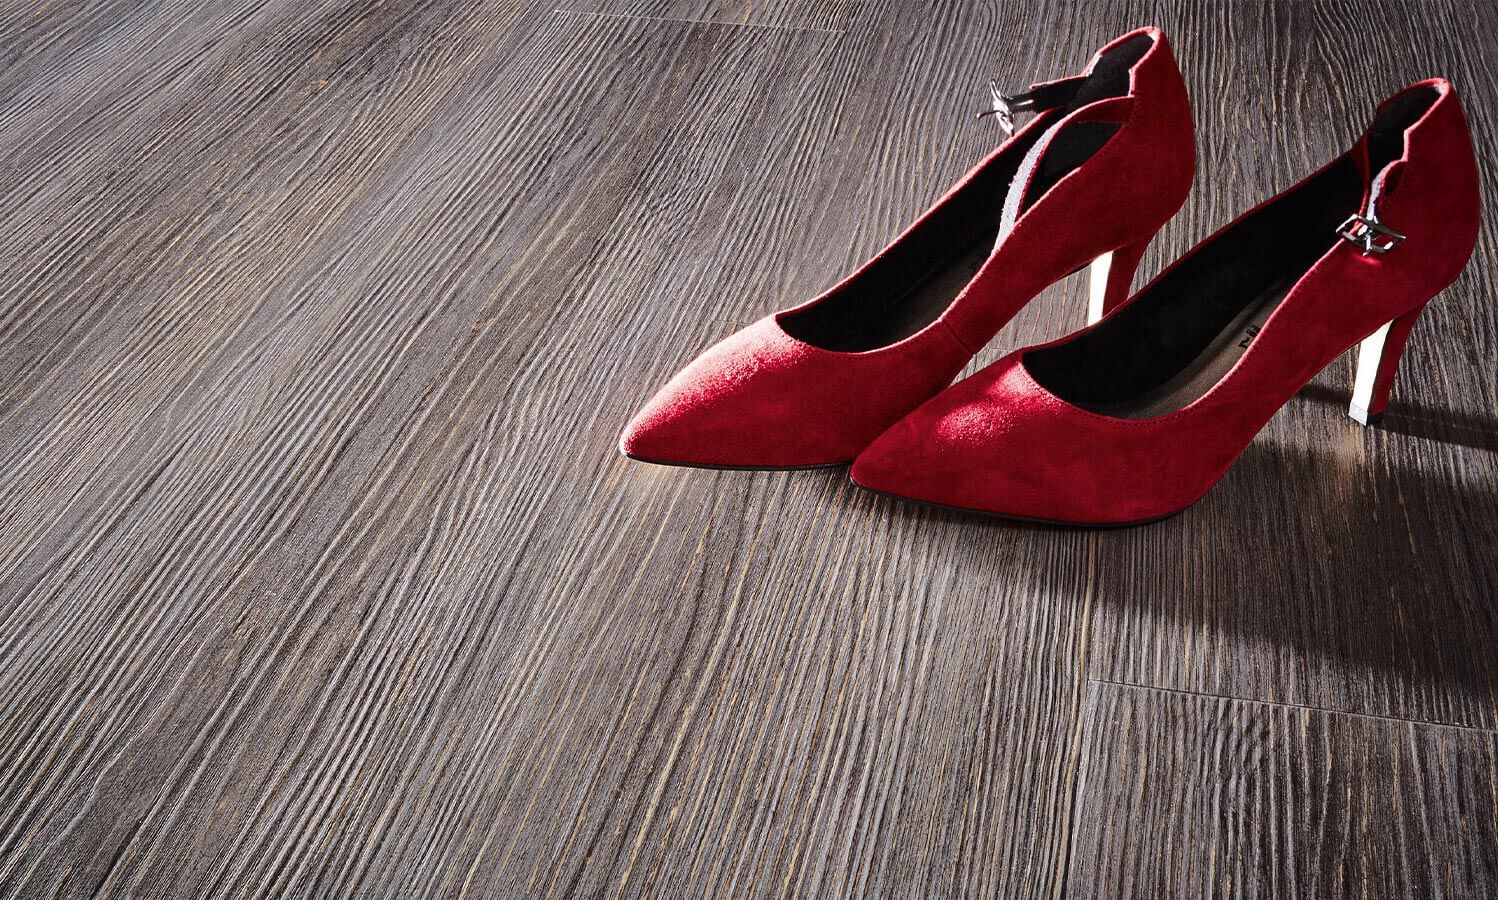 Vinylboden mit roten Schuhen